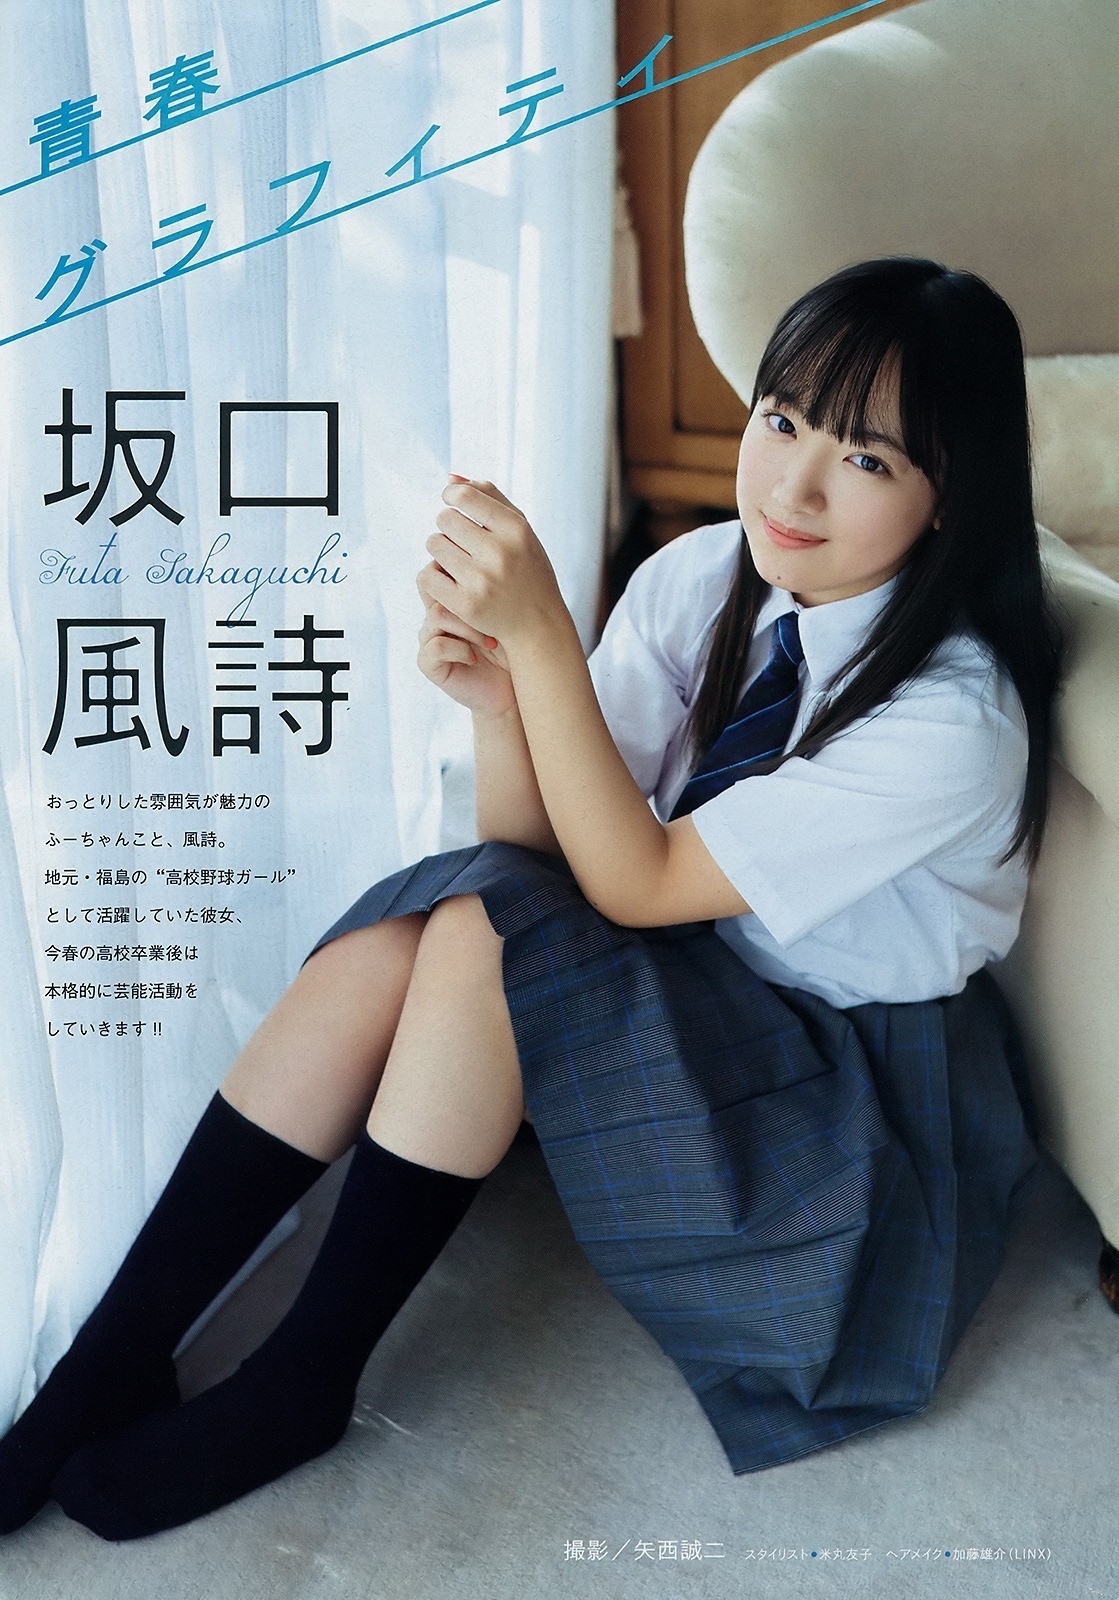 Sakaguchi Futa, Young Magazine, 2019 No.14 - itotii